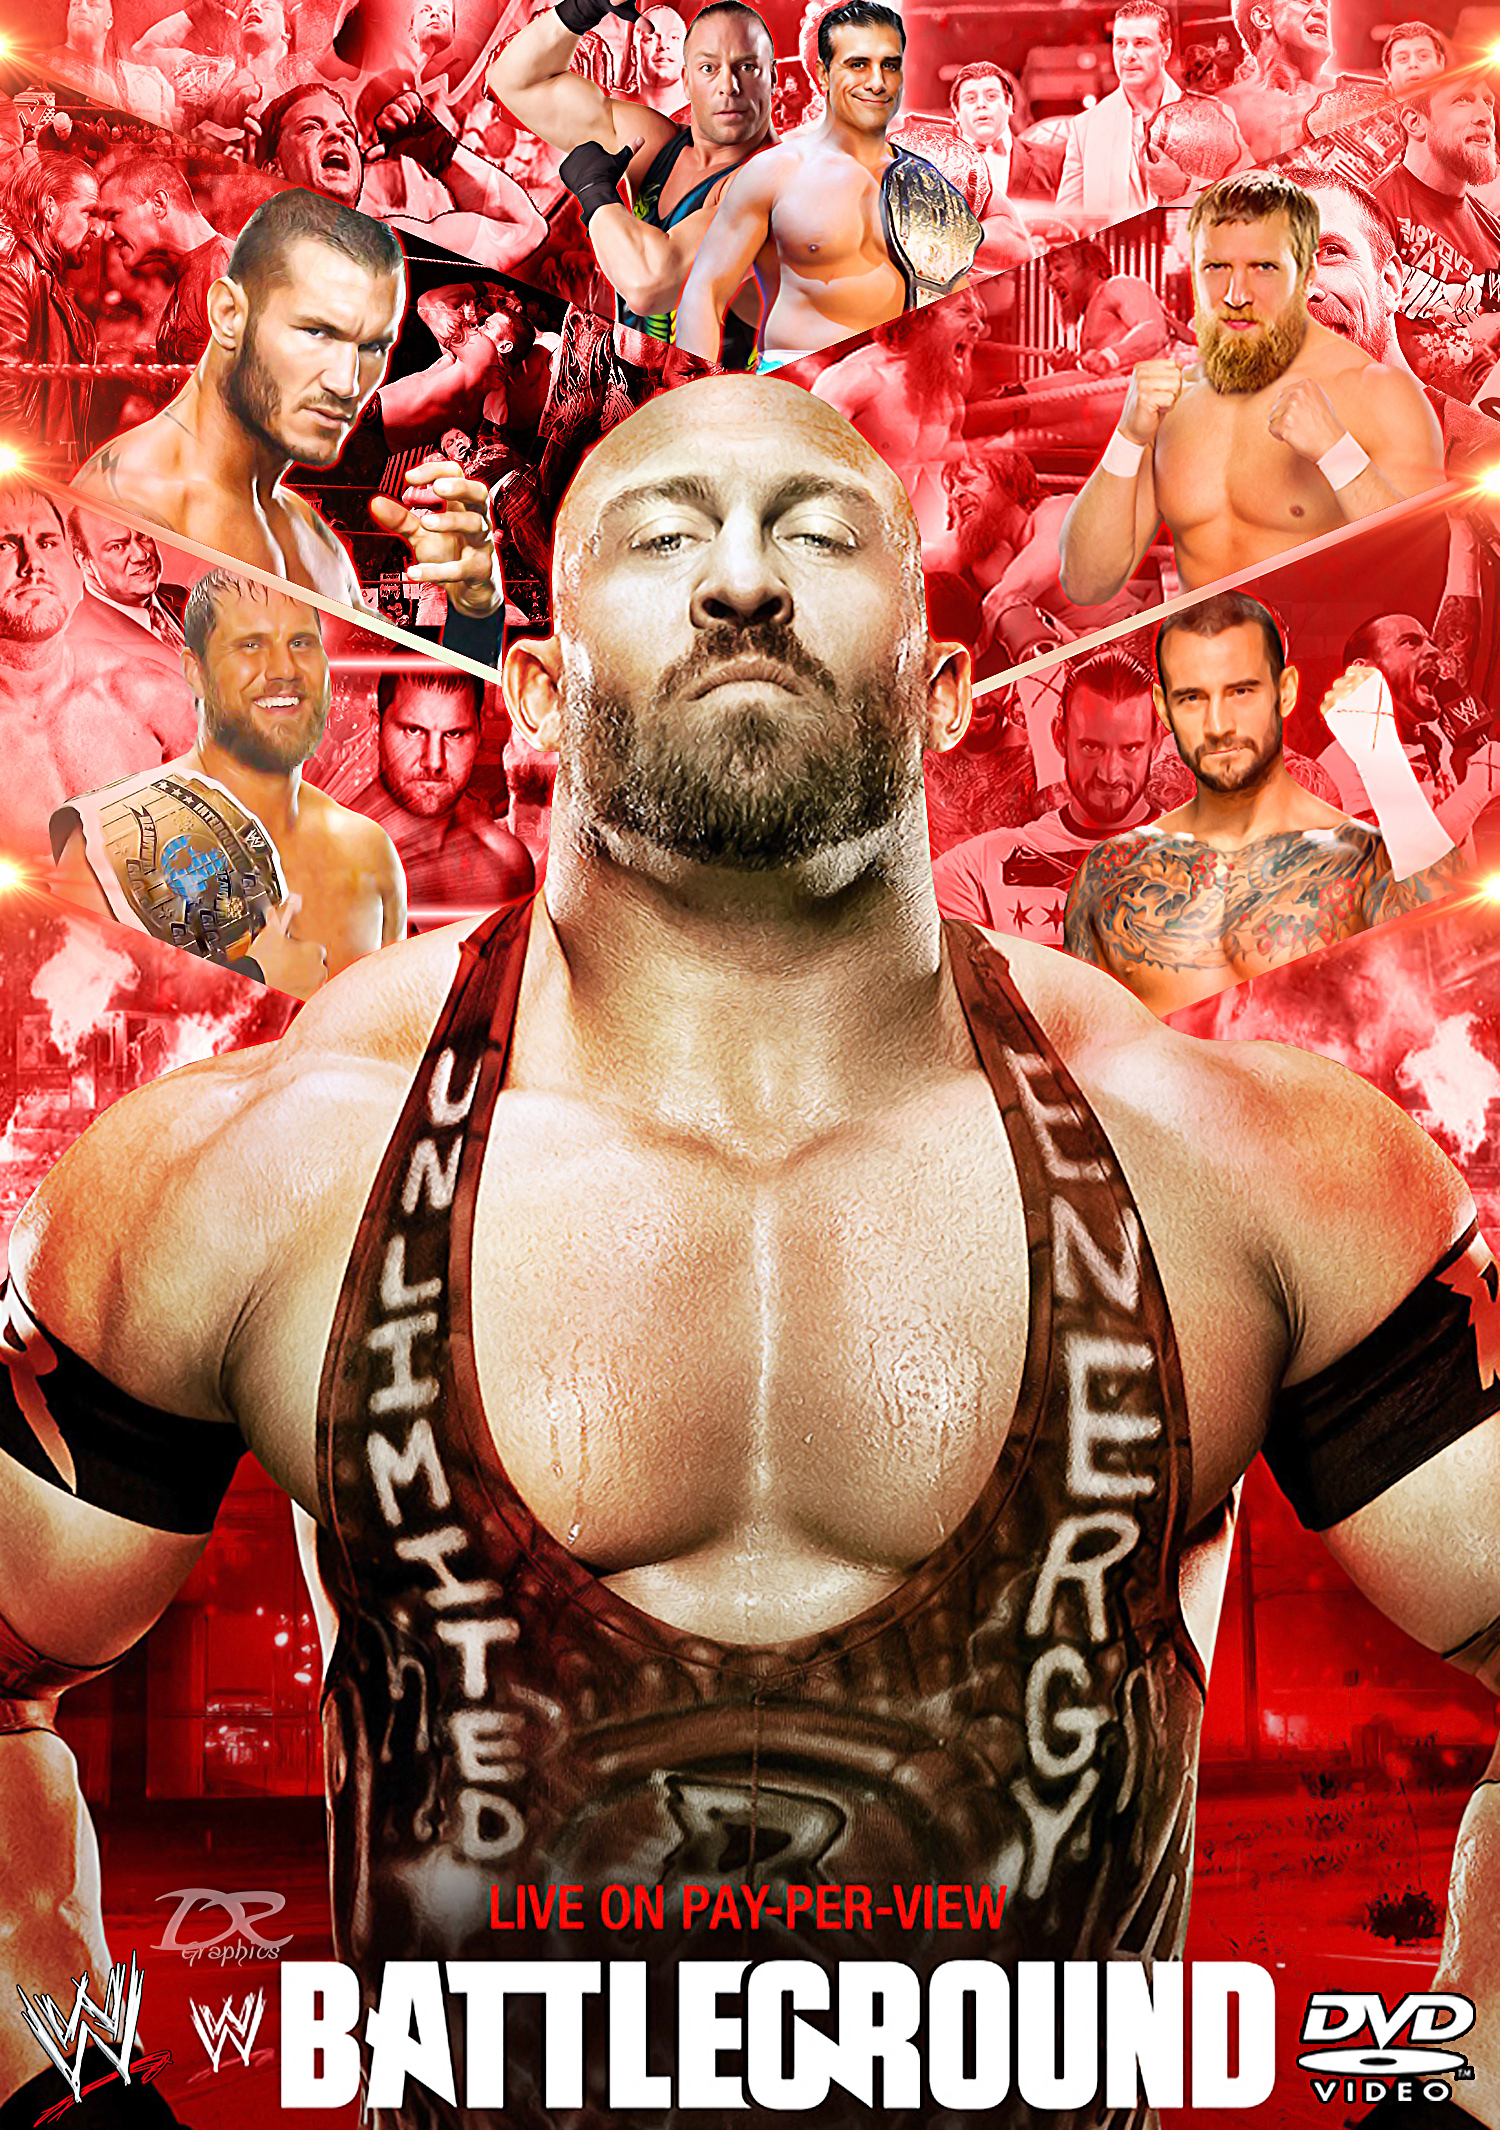 WWE Battleground 2013 Backgrounds on Wallpapers Vista